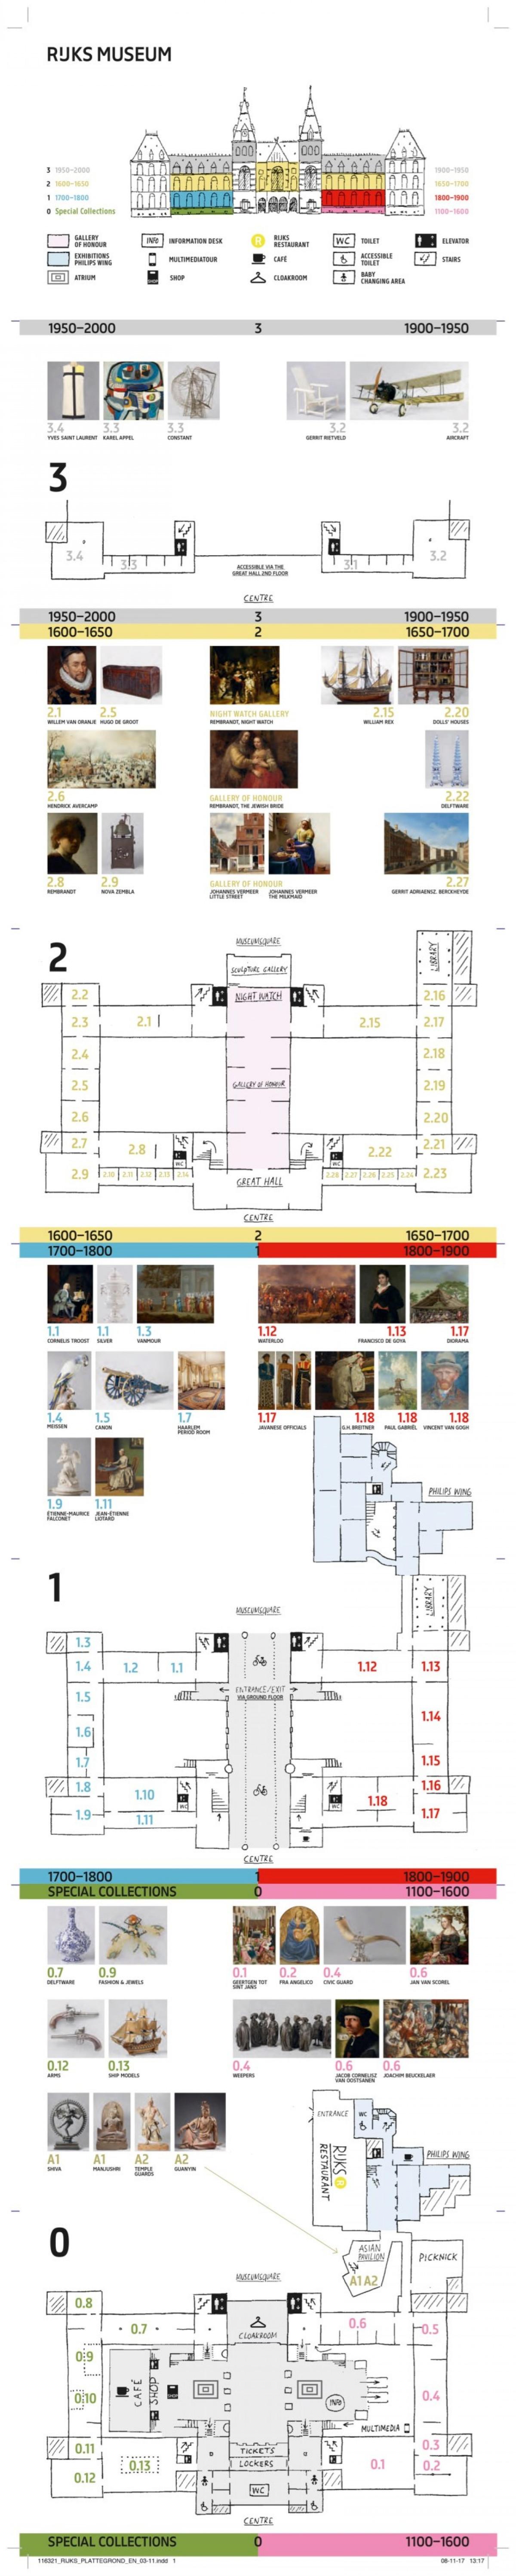 خريطة متحف ريجكس